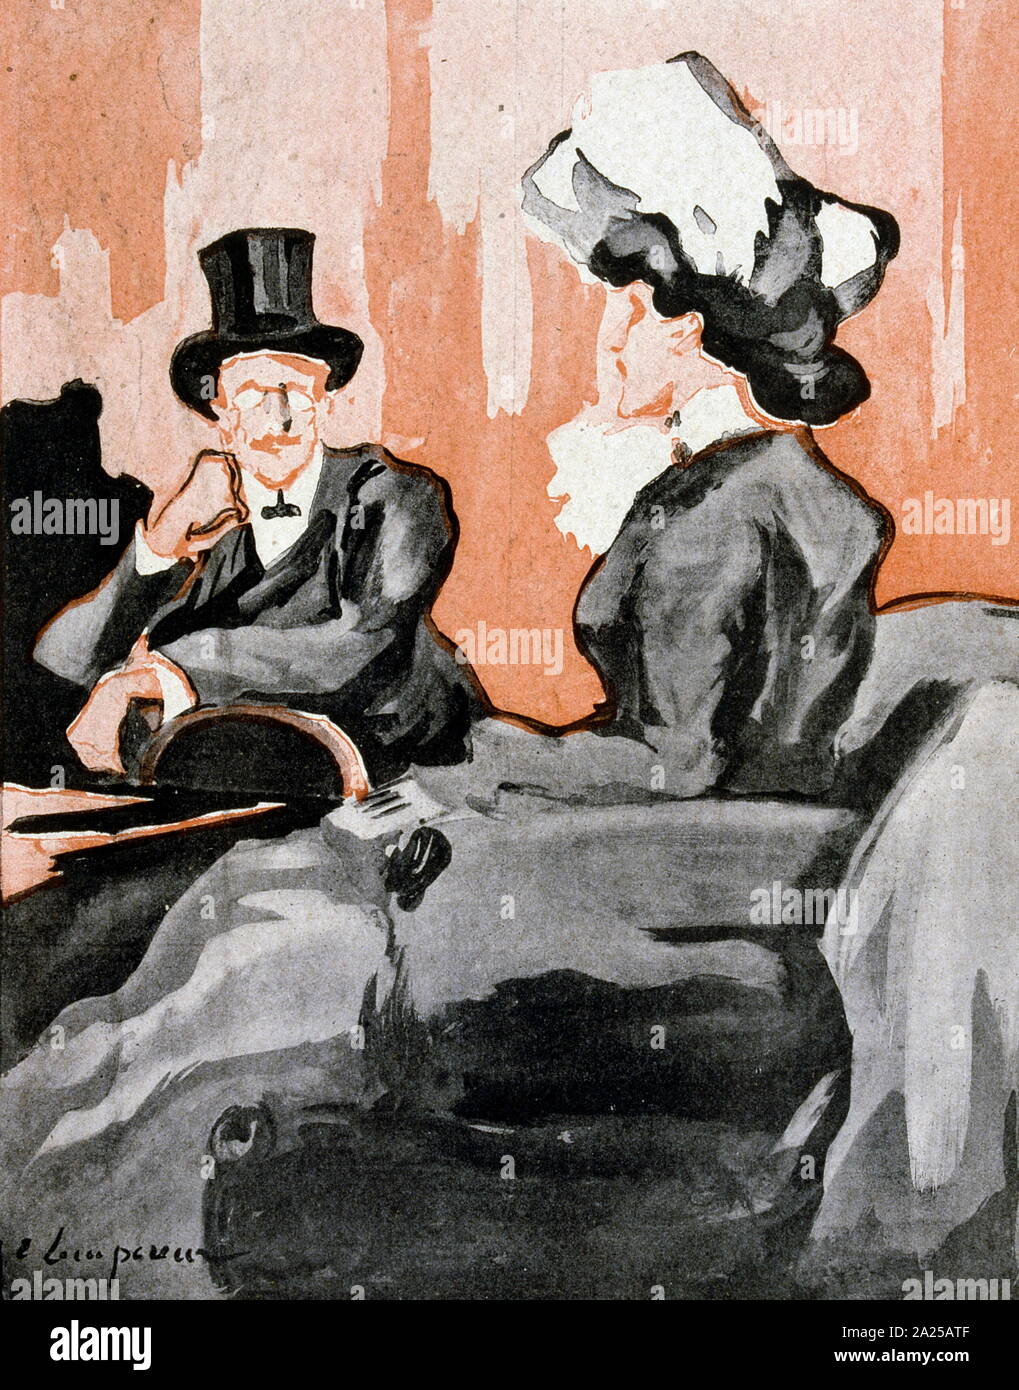 Illustrazione datata 1906, nella rivista francese, raffigurante un ben vestito uomo e donna in conversazione Foto Stock